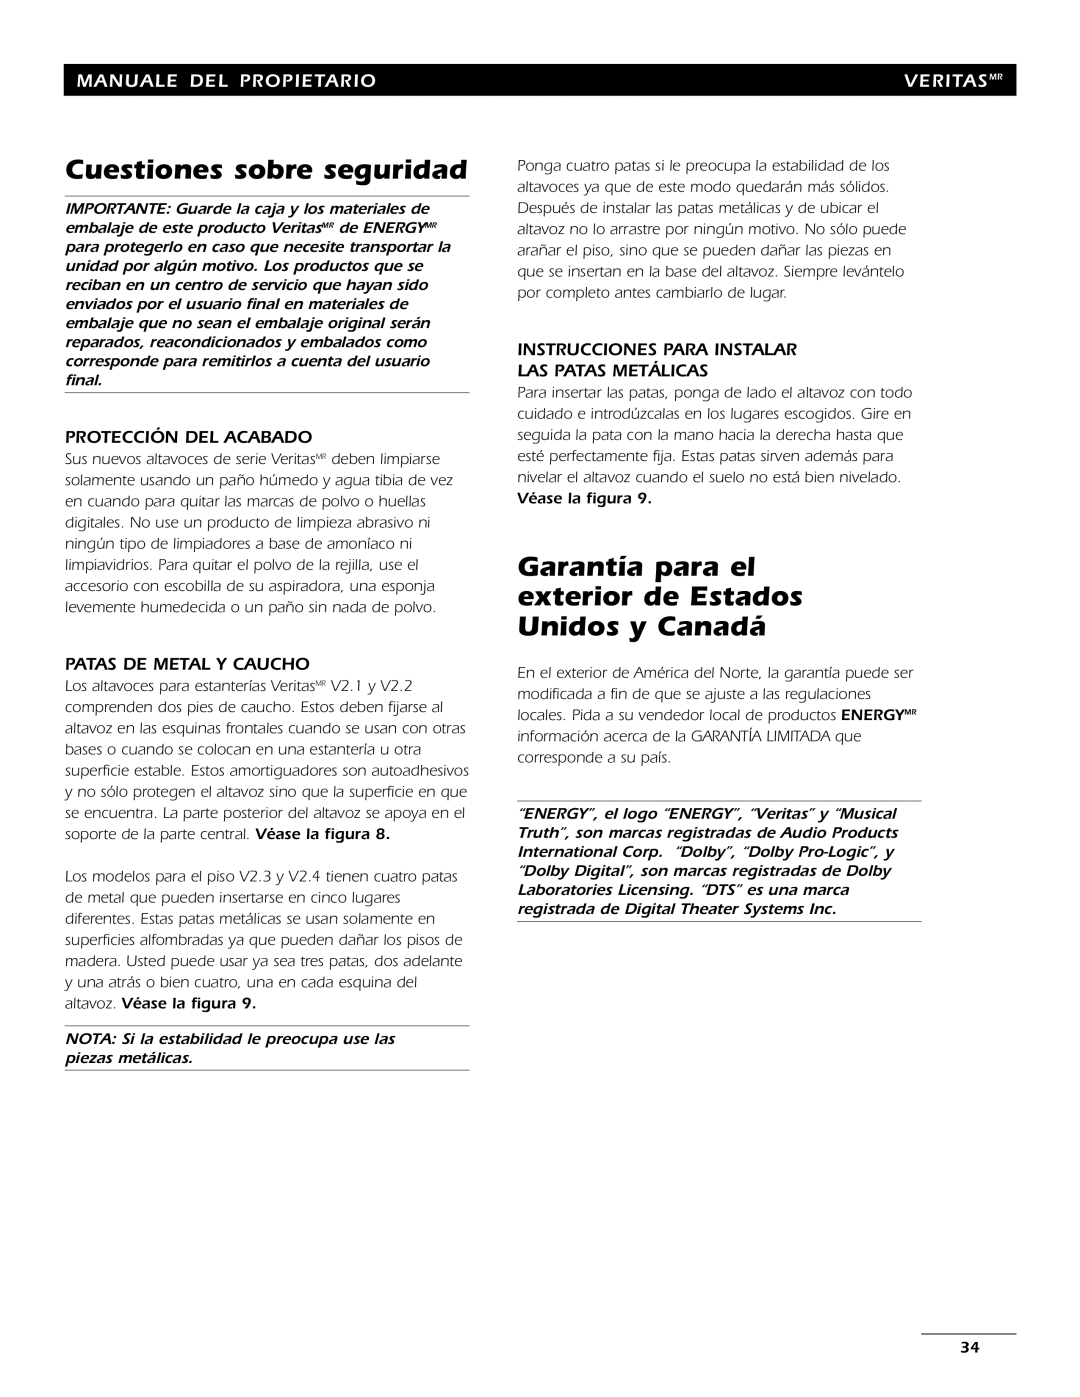 Energy Speaker Systems 7AI manual Cuestiones sobre seguridad, Protección Del Acabado, Patas De Metal Y Caucho, Veritasmr 